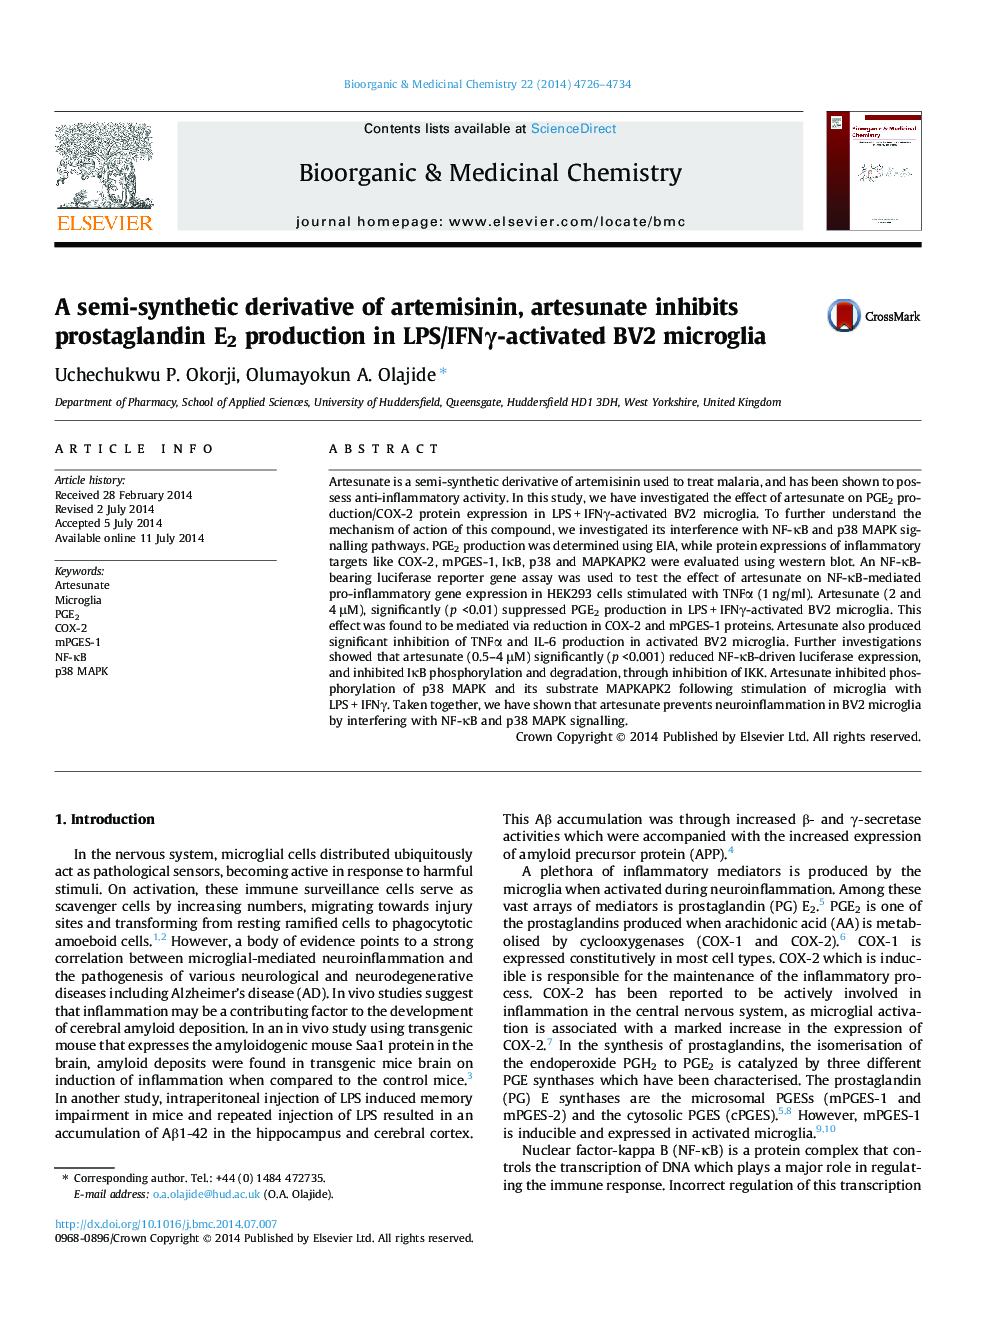 A semi-synthetic derivative of artemisinin, artesunate inhibits prostaglandin E2 production in LPS/IFNγ-activated BV2 microglia